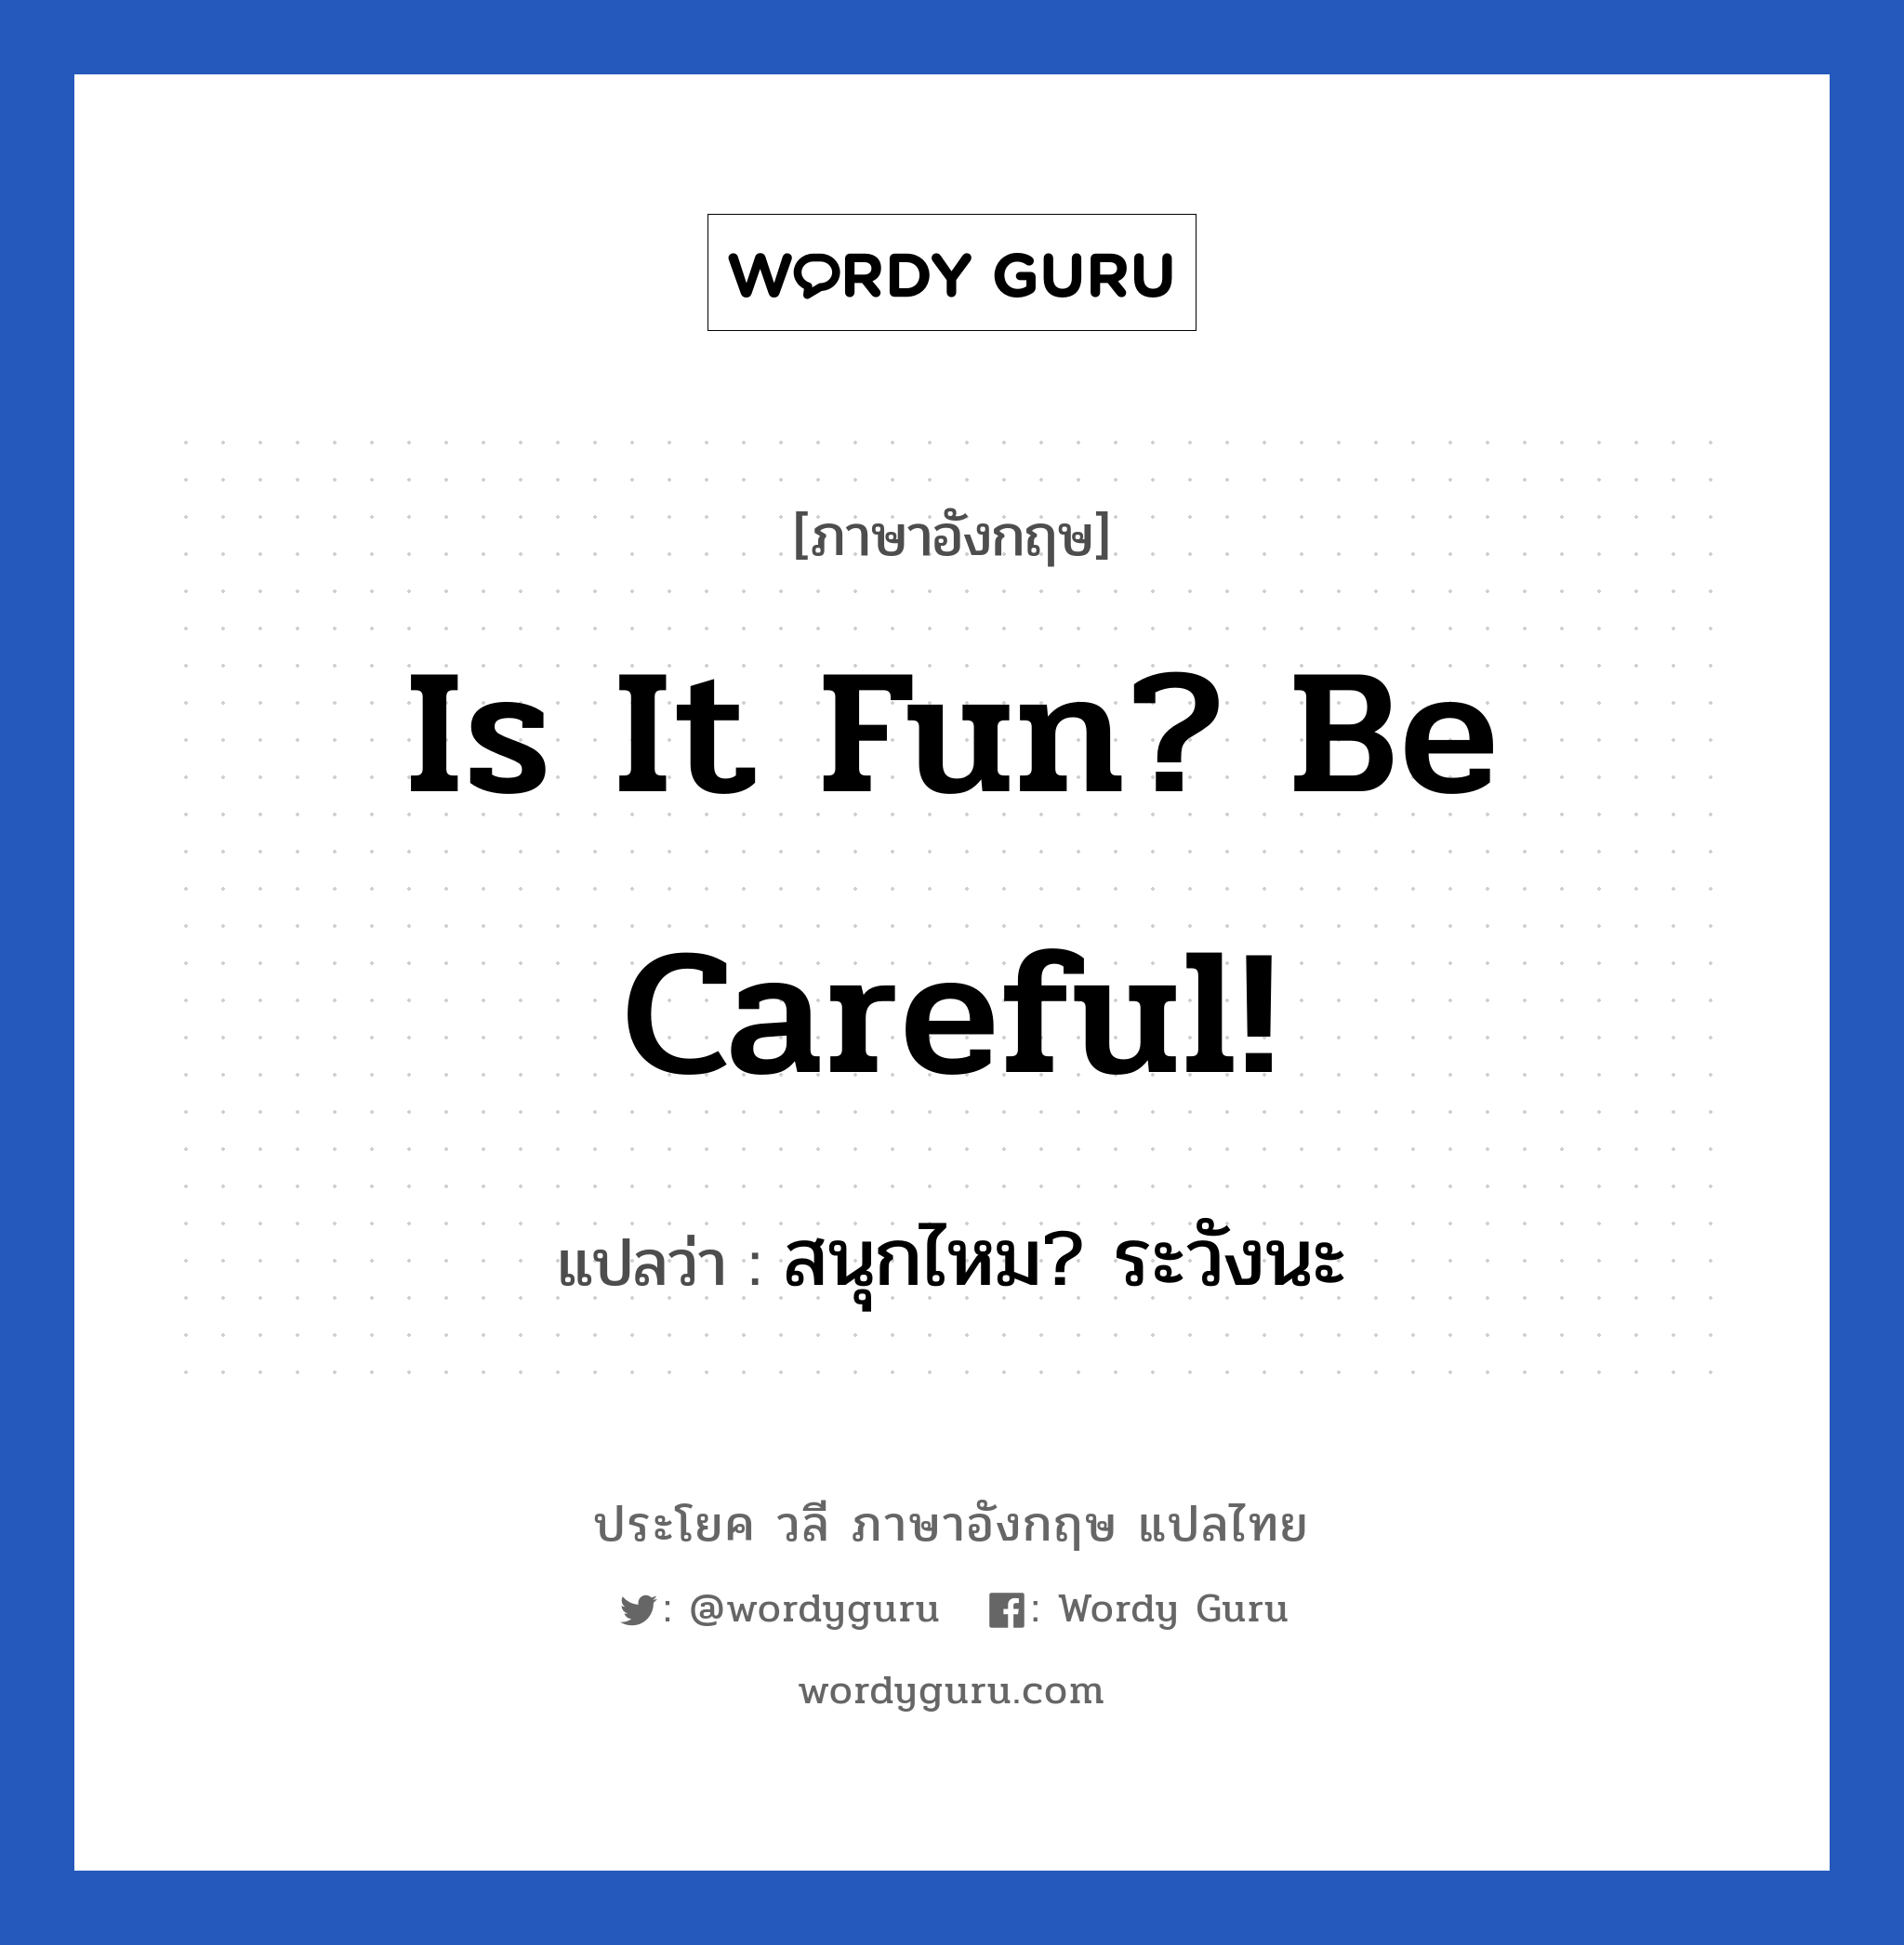 สนุกไหม? ระวังนะ ภาษาอังกฤษ?, วลีภาษาอังกฤษ สนุกไหม? ระวังนะ แปลว่า Is it fun? Be careful!